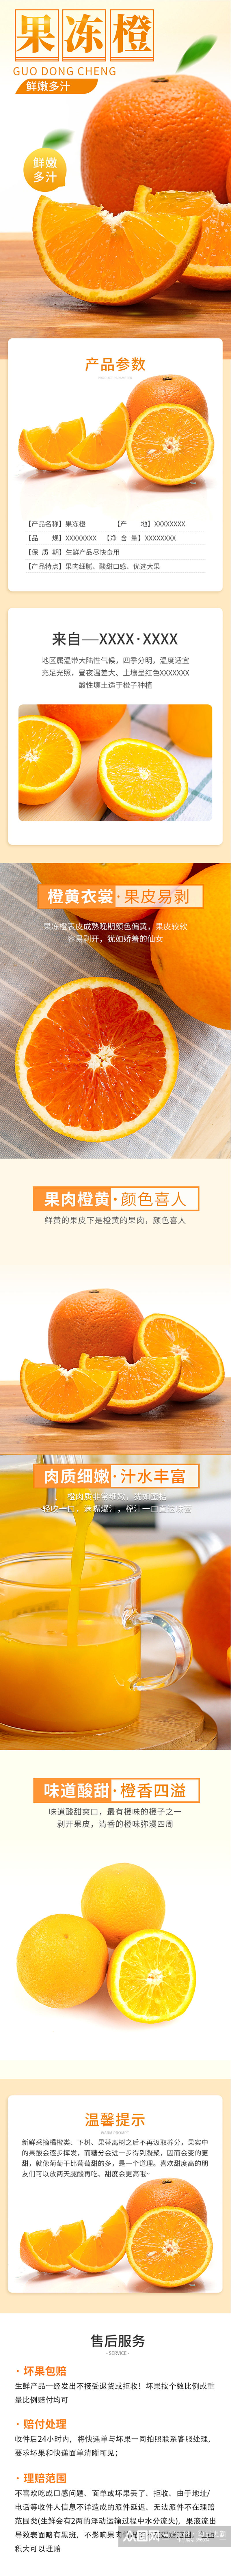 果冻橙水果详情模板素材